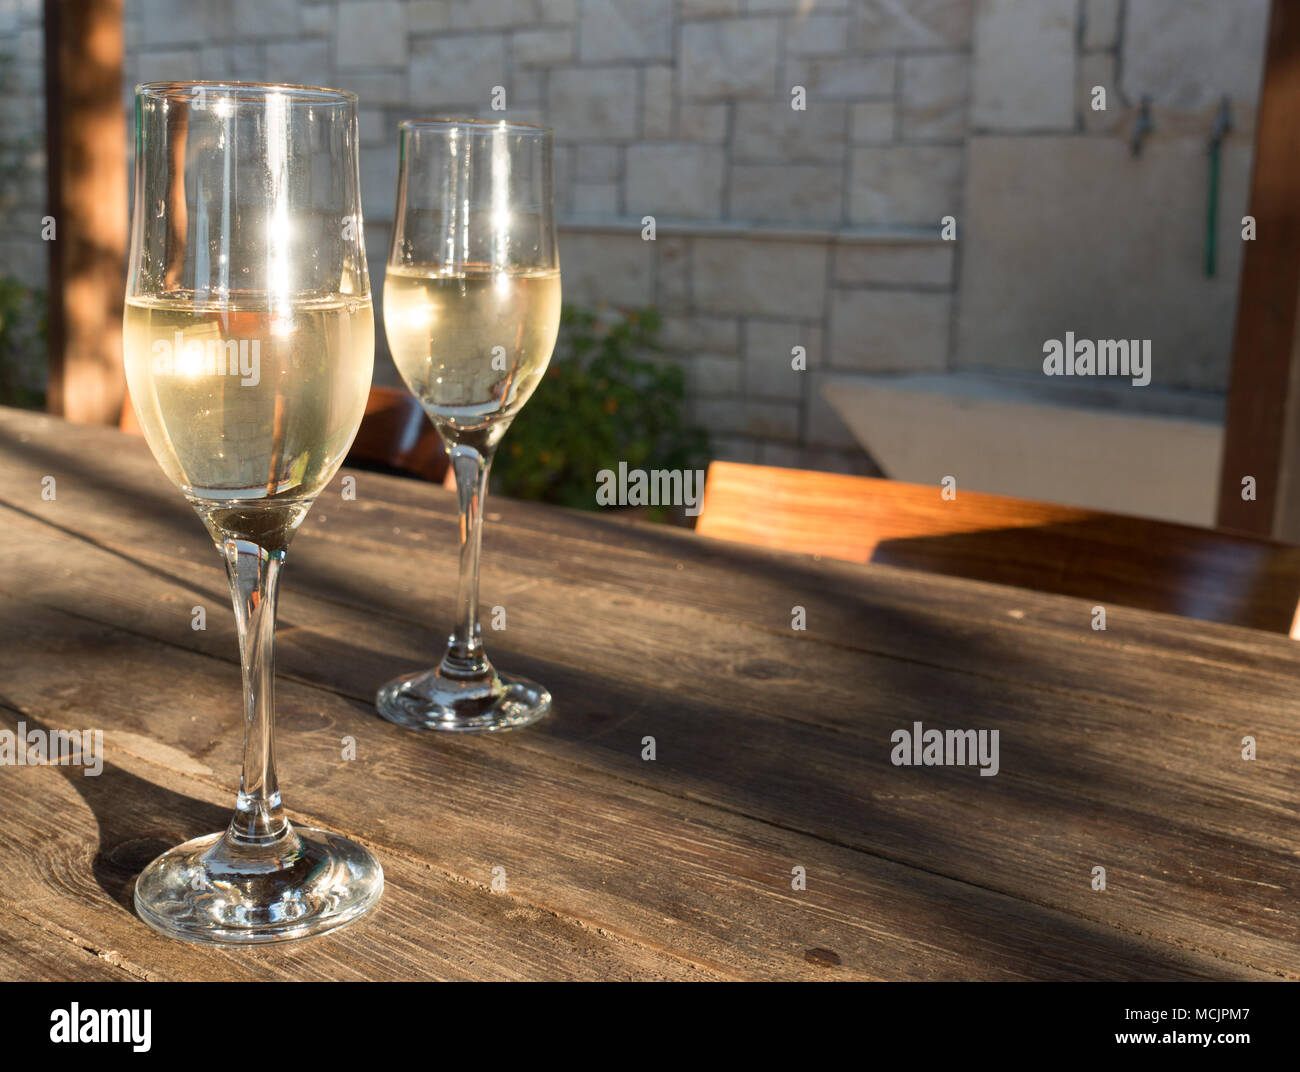 Verres de vin blanc étincelaient sur table à manger, Crète, Grèce Banque D'Images